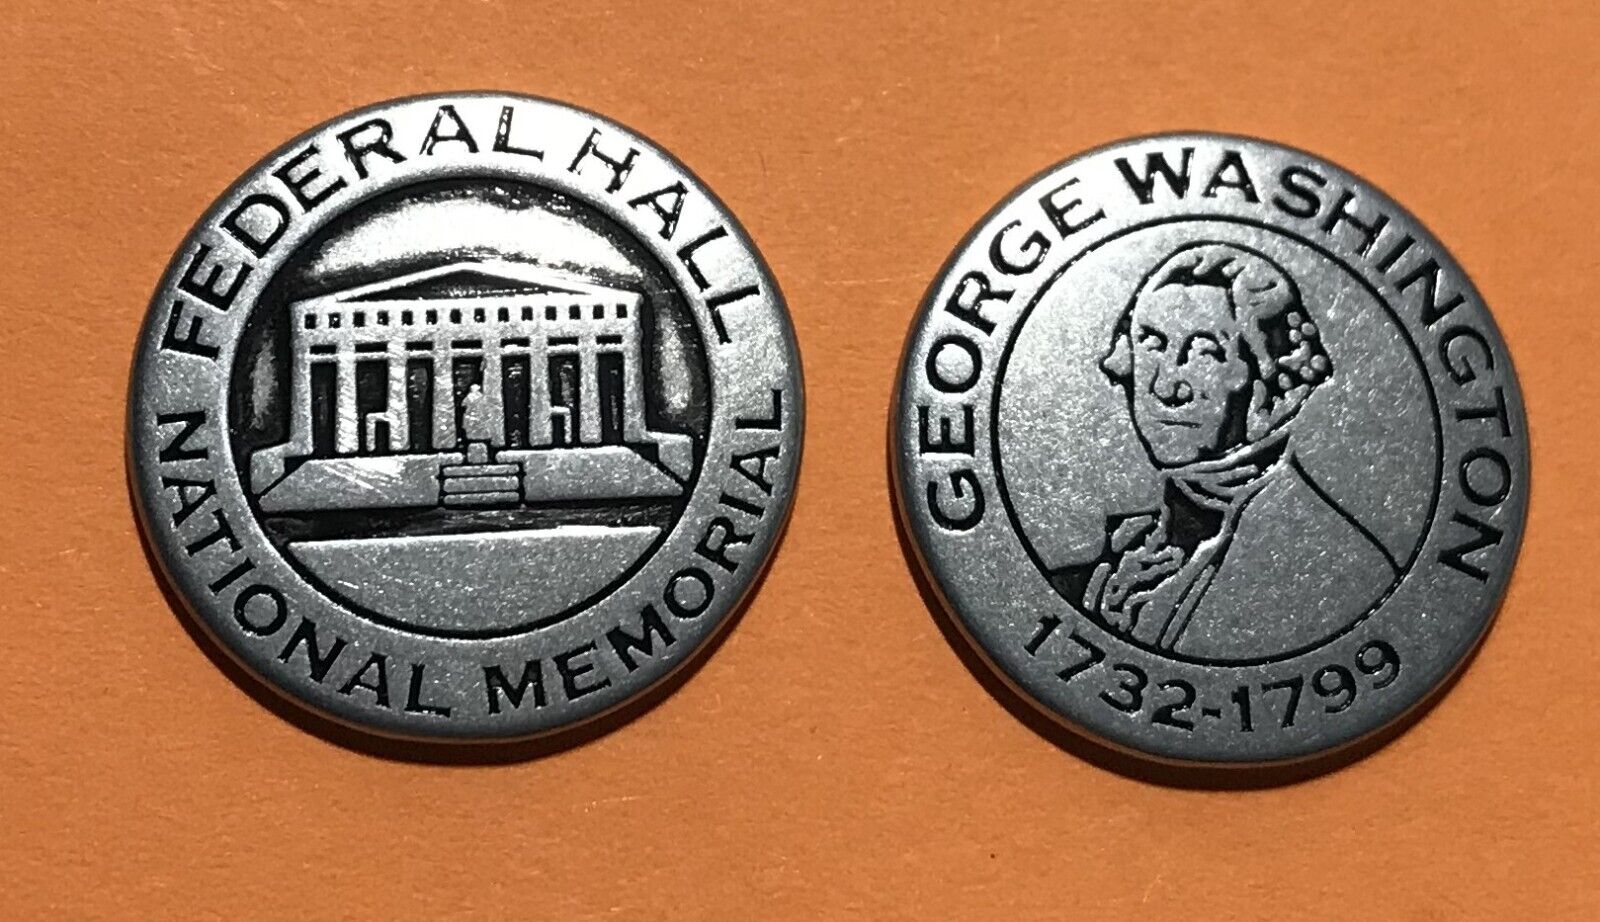 Federal Hall National Memorial Collectible Token